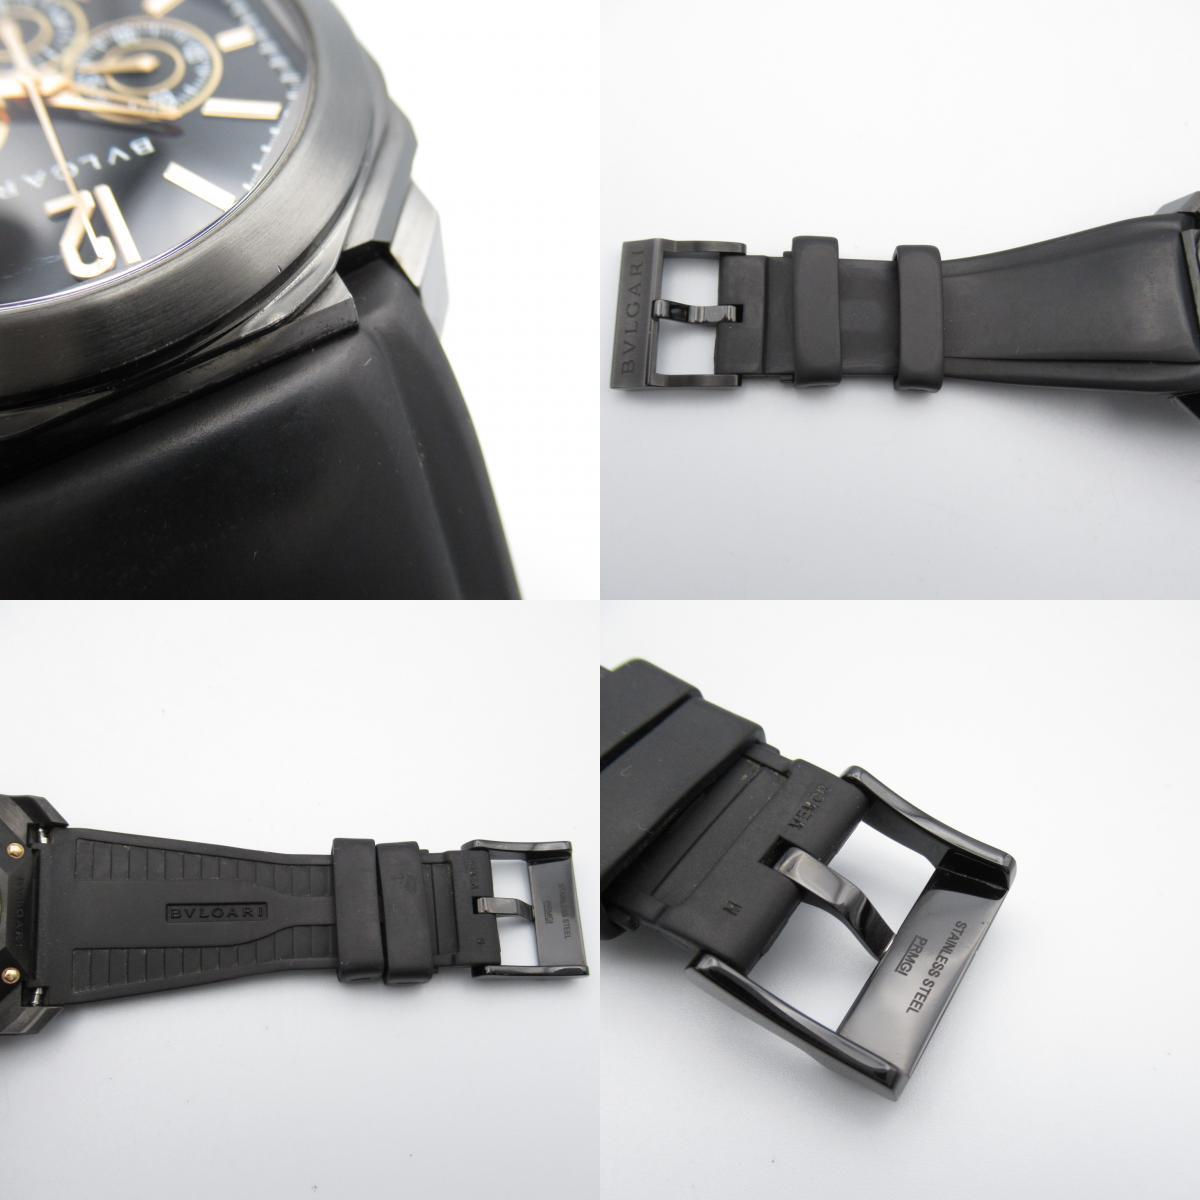  BVLGARY Okt Ultra Nero бренд off BVLGARI нержавеющая сталь наручные часы SS/ Raver б/у мужской 